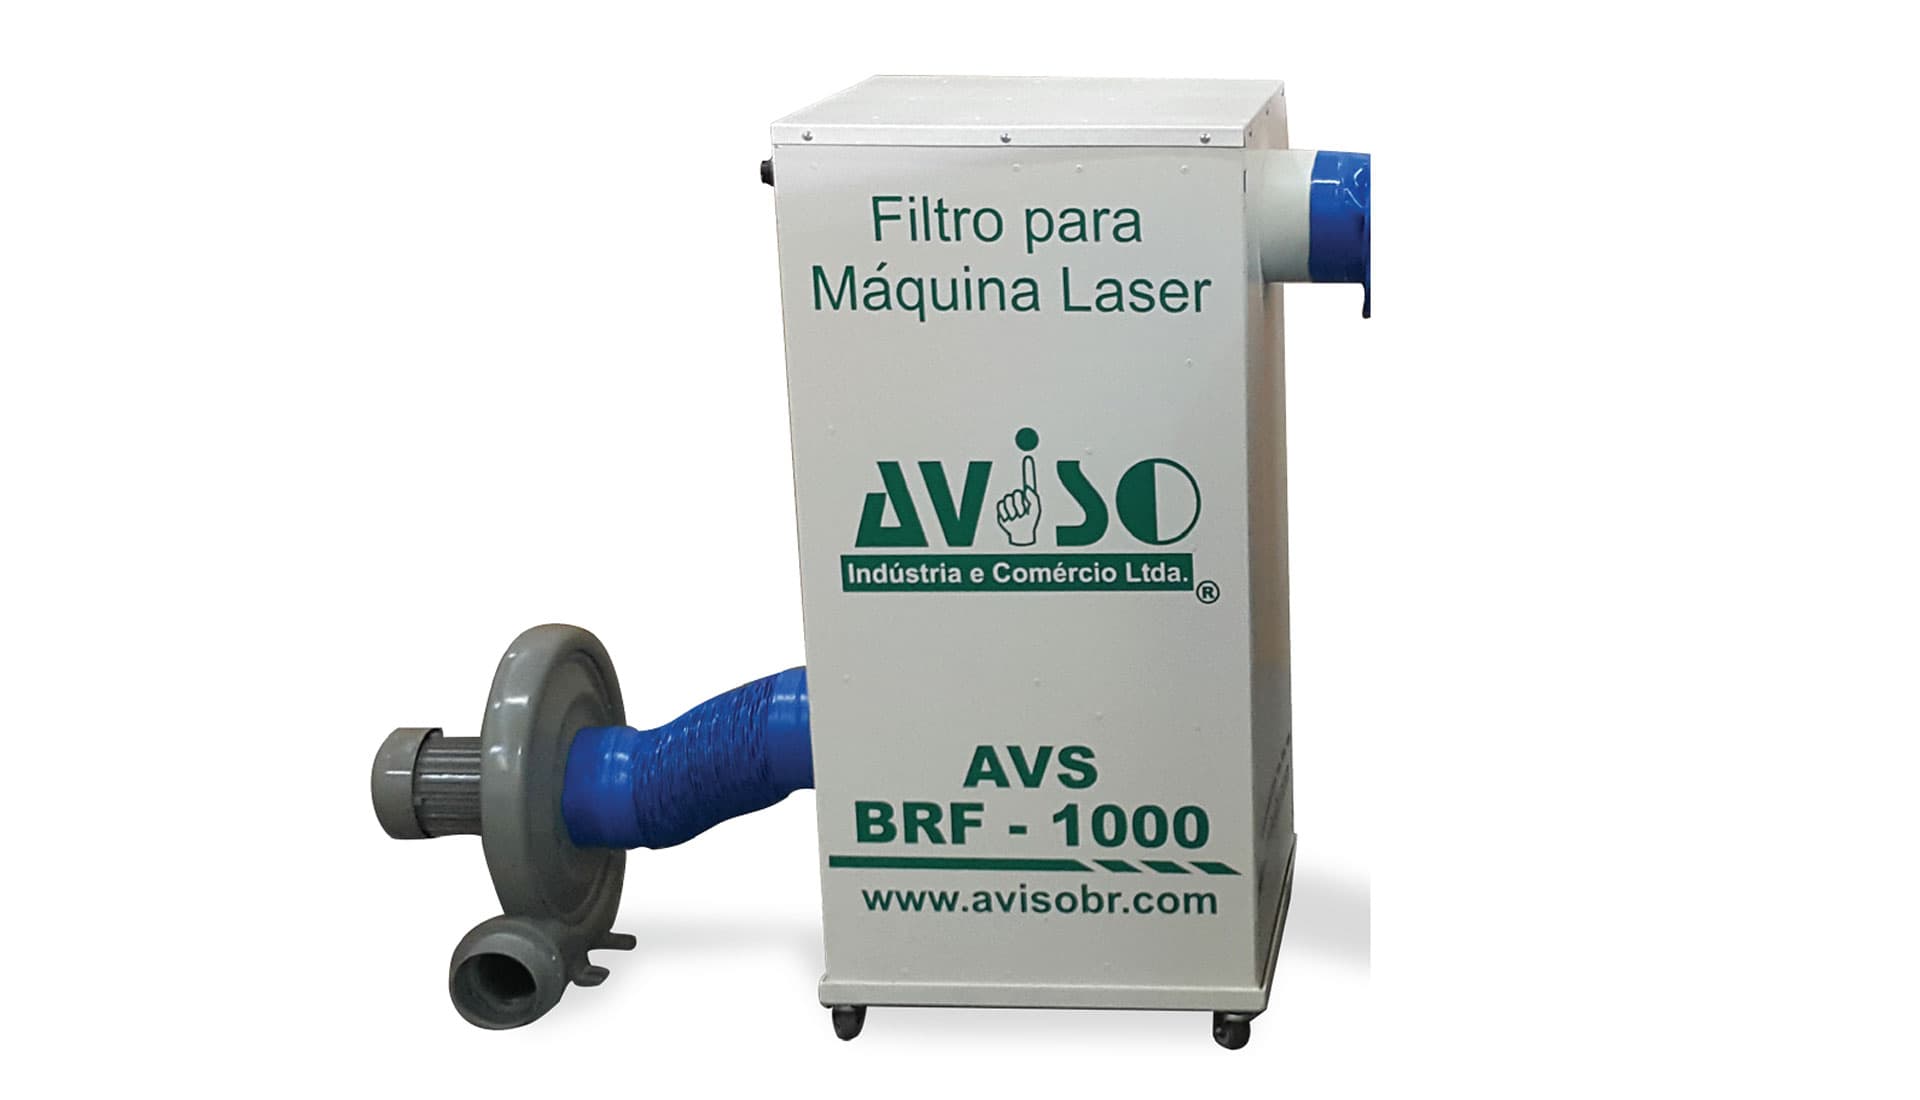 Filtro para Máquinas Laser - AVS-BRF-1000 Produção Nacional